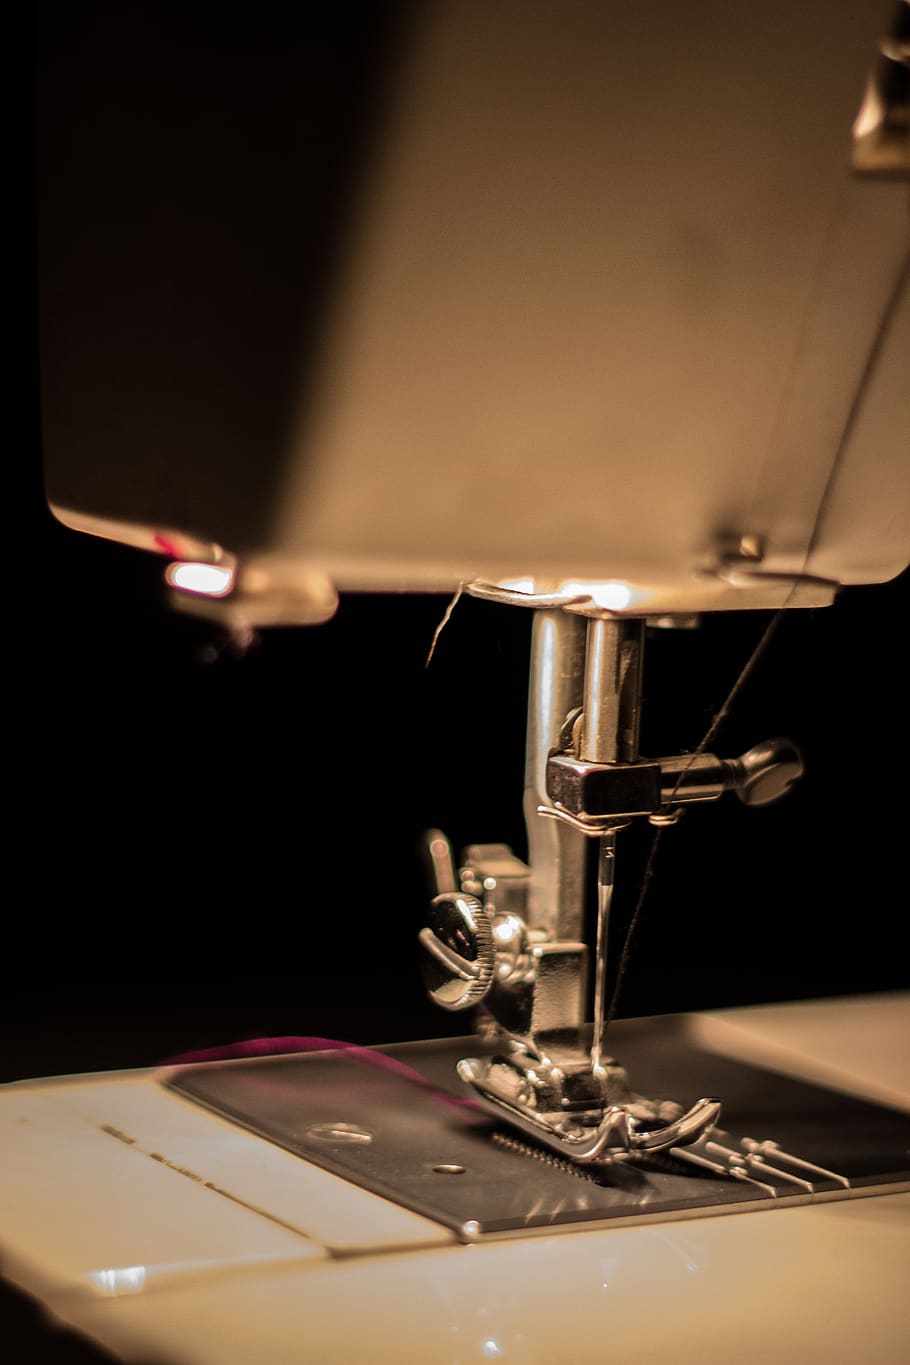 HD wallpaper: sewing machine macro photography, sewing-machine, stitch ...